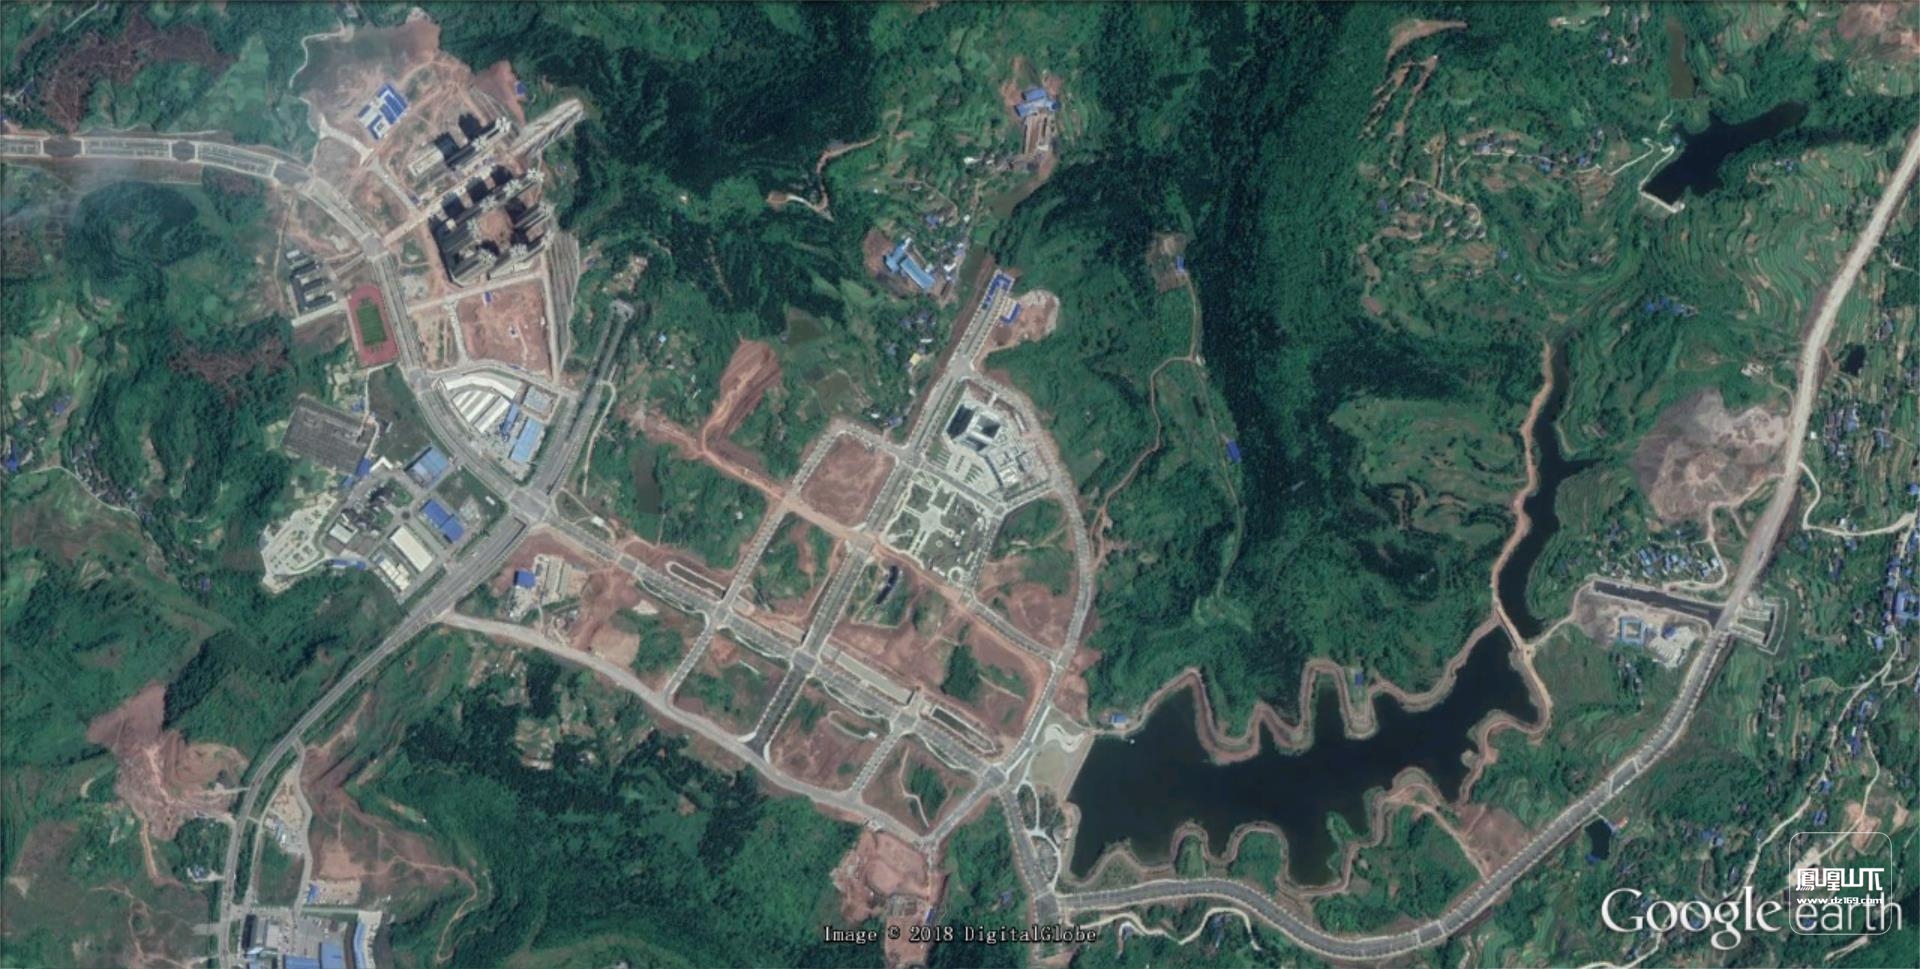 村庄新旧对比卫星图 - 安徽省卫星影像对比图